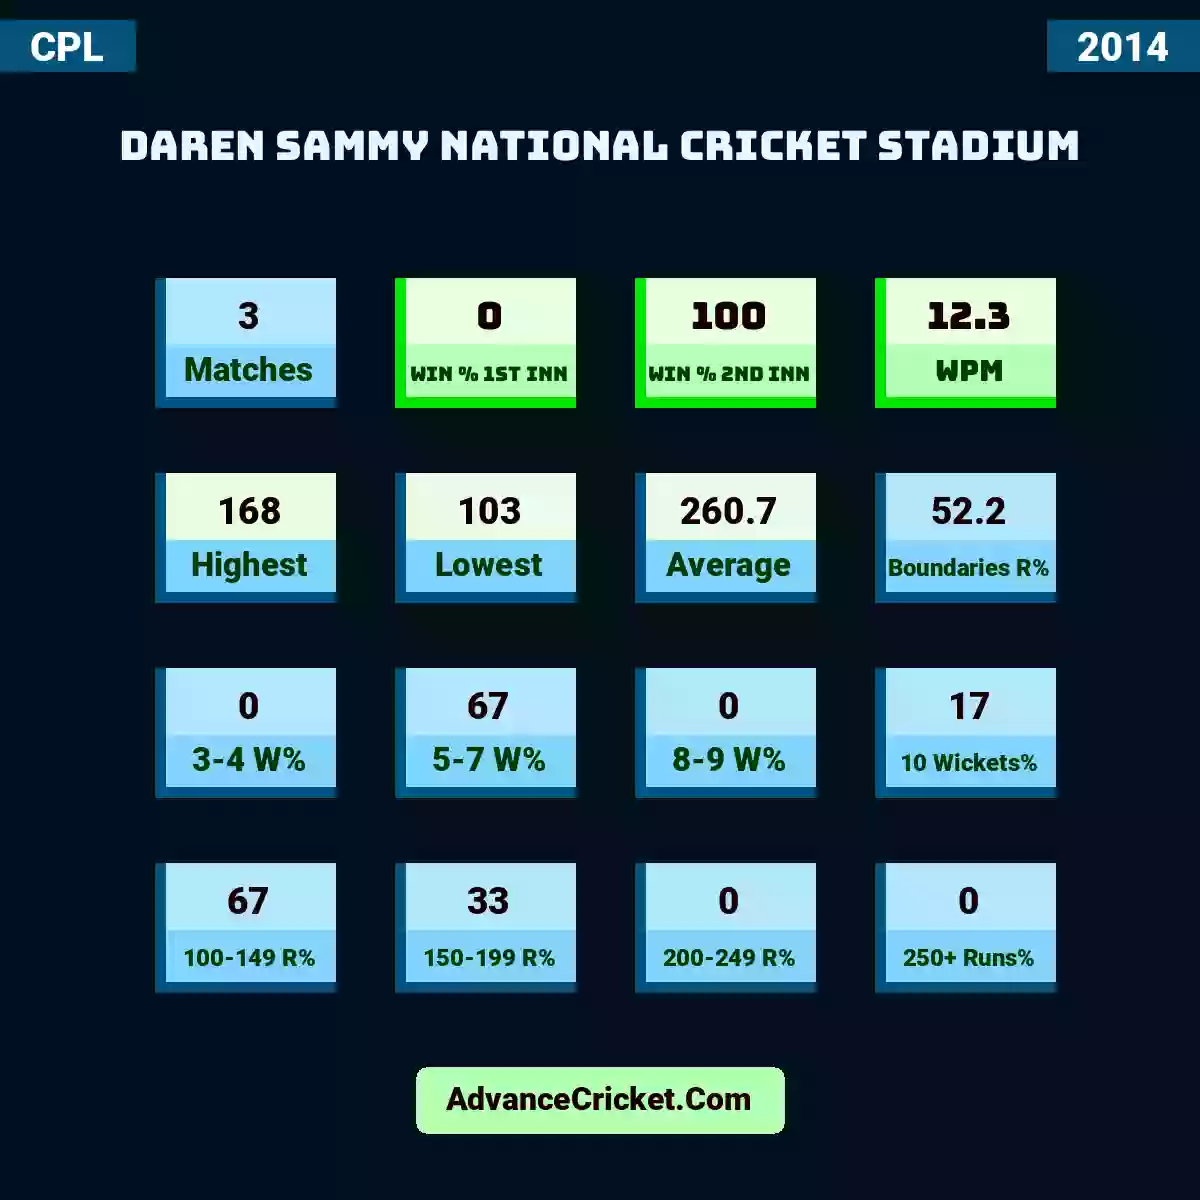 Image showing Daren Sammy National Cricket Stadium with Matches: 3, Win % 1st Inn: 0, Win % 2nd Inn: 100, WPM: 12.3, Highest: 168, Lowest: 103, Average: 260.7, Boundaries R%: 52.2, 3-4 W%: 0, 5-7 W%: 67, 8-9 W%: 0, 10 Wickets%: 17, 100-149 R%: 67, 150-199 R%: 33, 200-249 R%: 0, 250+ Runs%: 0.